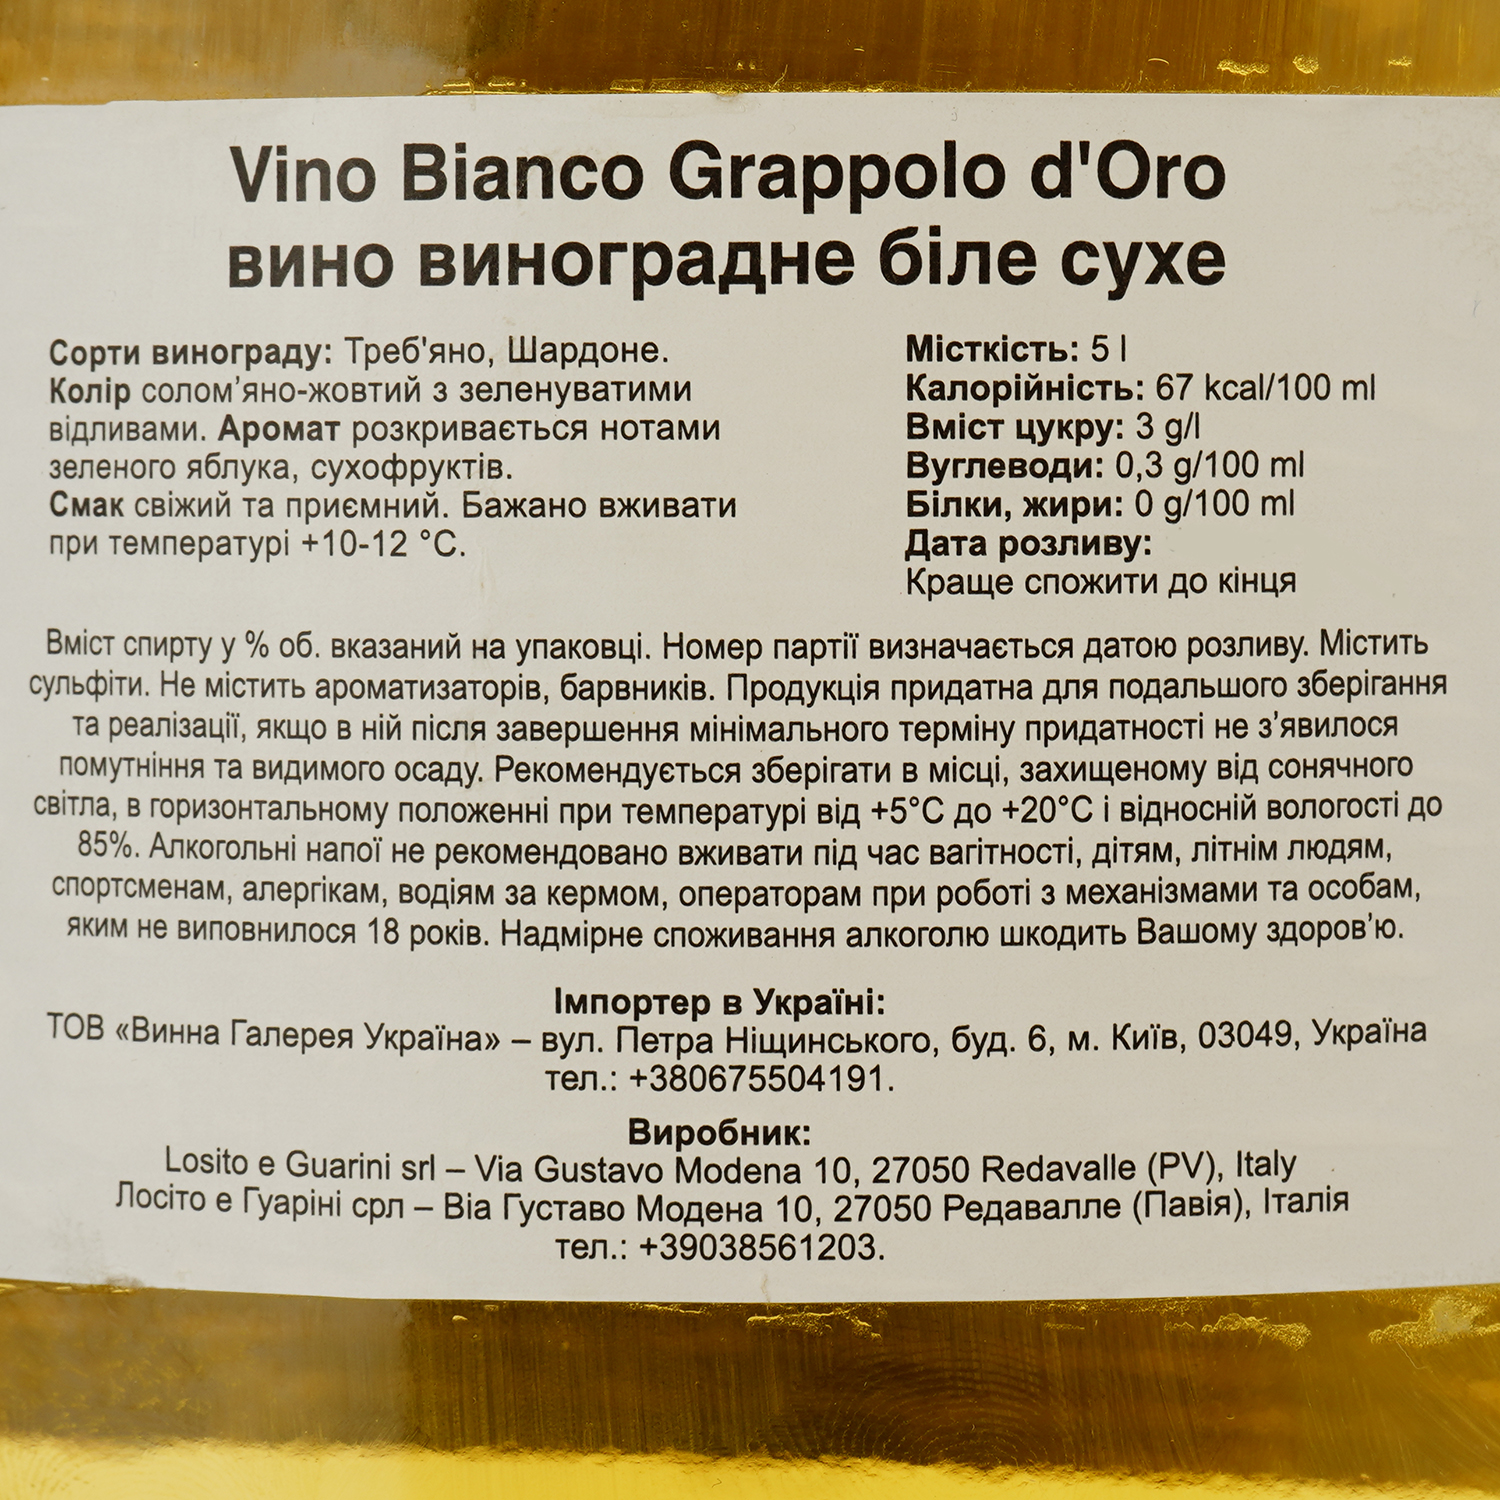 Вино Vino Bianco Grappolo d'Oro, белое, сухое, 5 л - фото 3